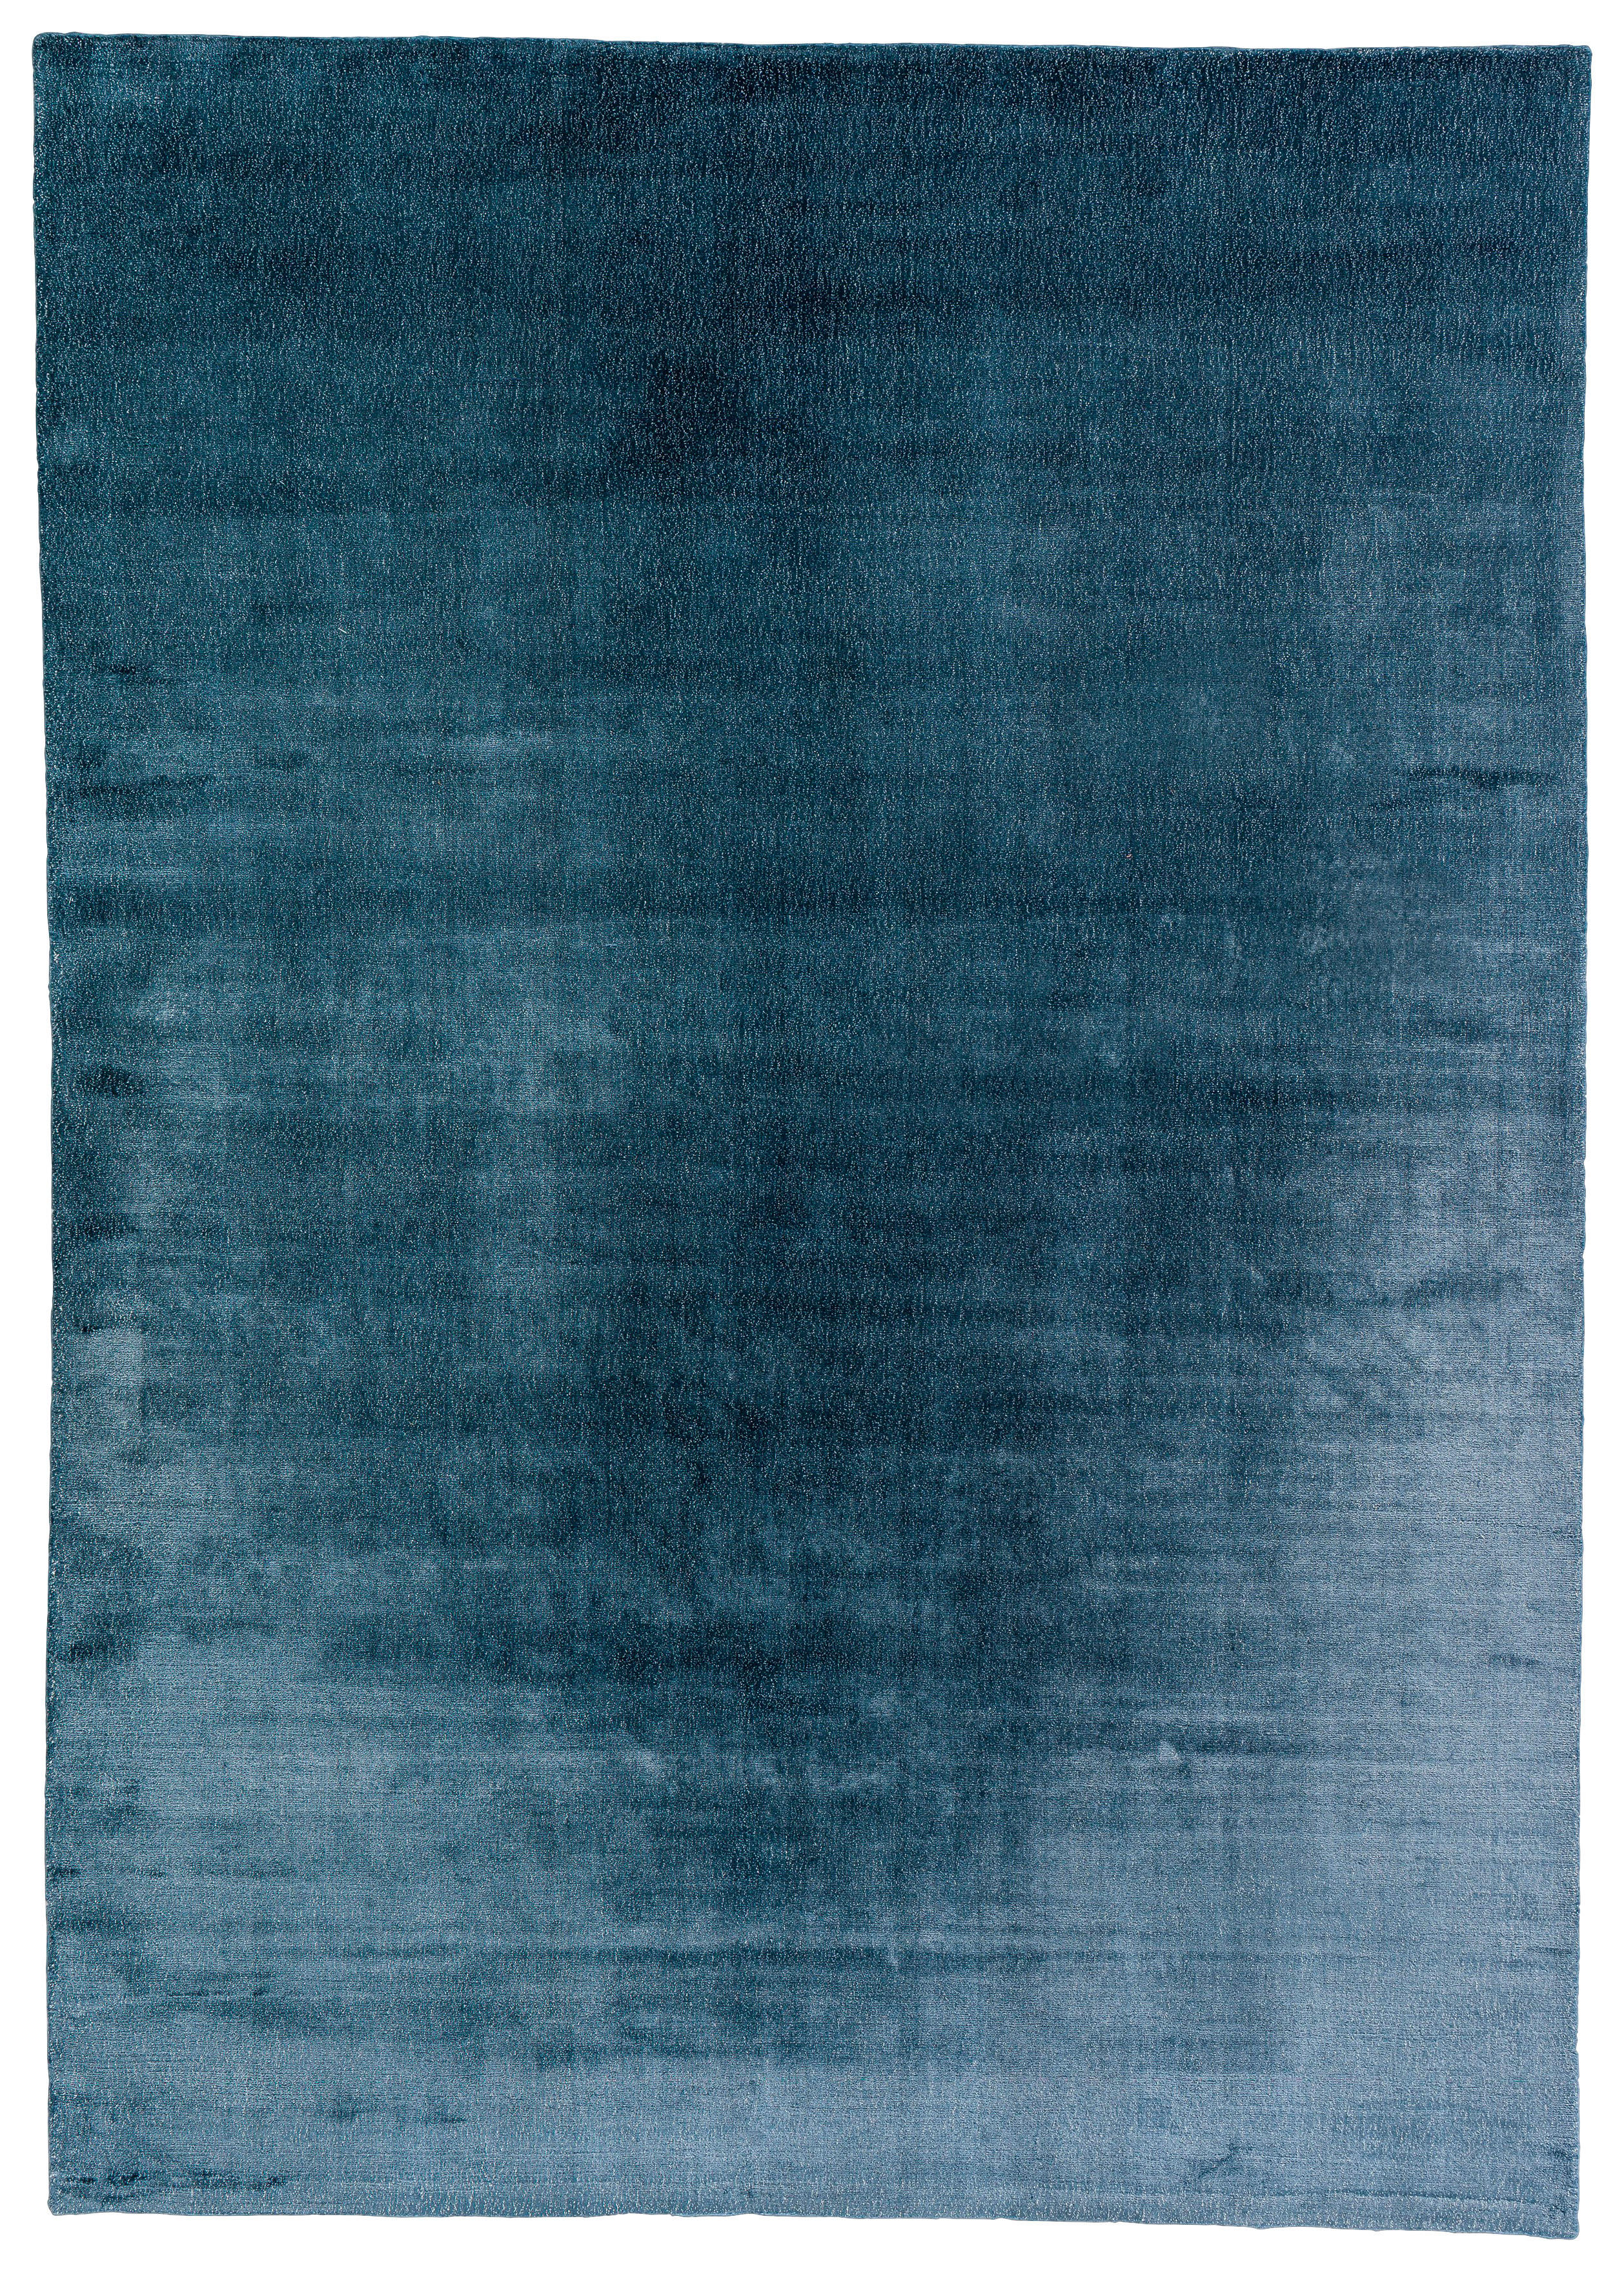 HANDWEBTEPPICH 140/200 cm  - Blau, Basics, Textil (140/200cm) - Schöner Wohnen